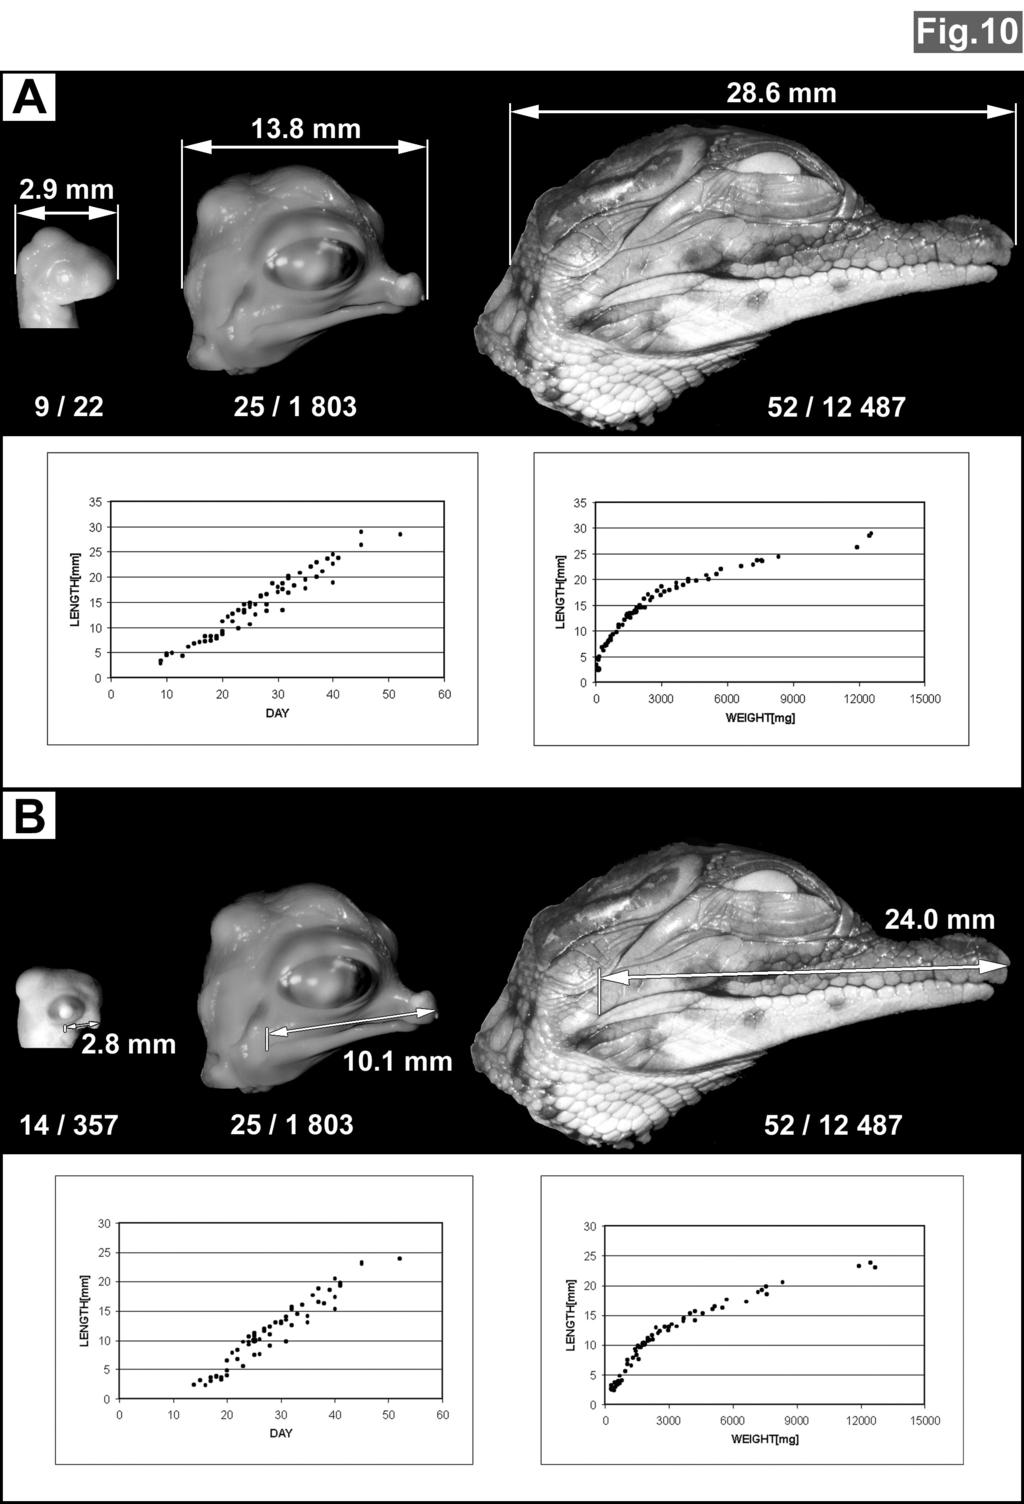 Obrázek 30. Morfometrické hodnocení prenatálního vývoje hlavy u krokodýla během embryonálního vývoje. (A) Maximální délka hlavy.